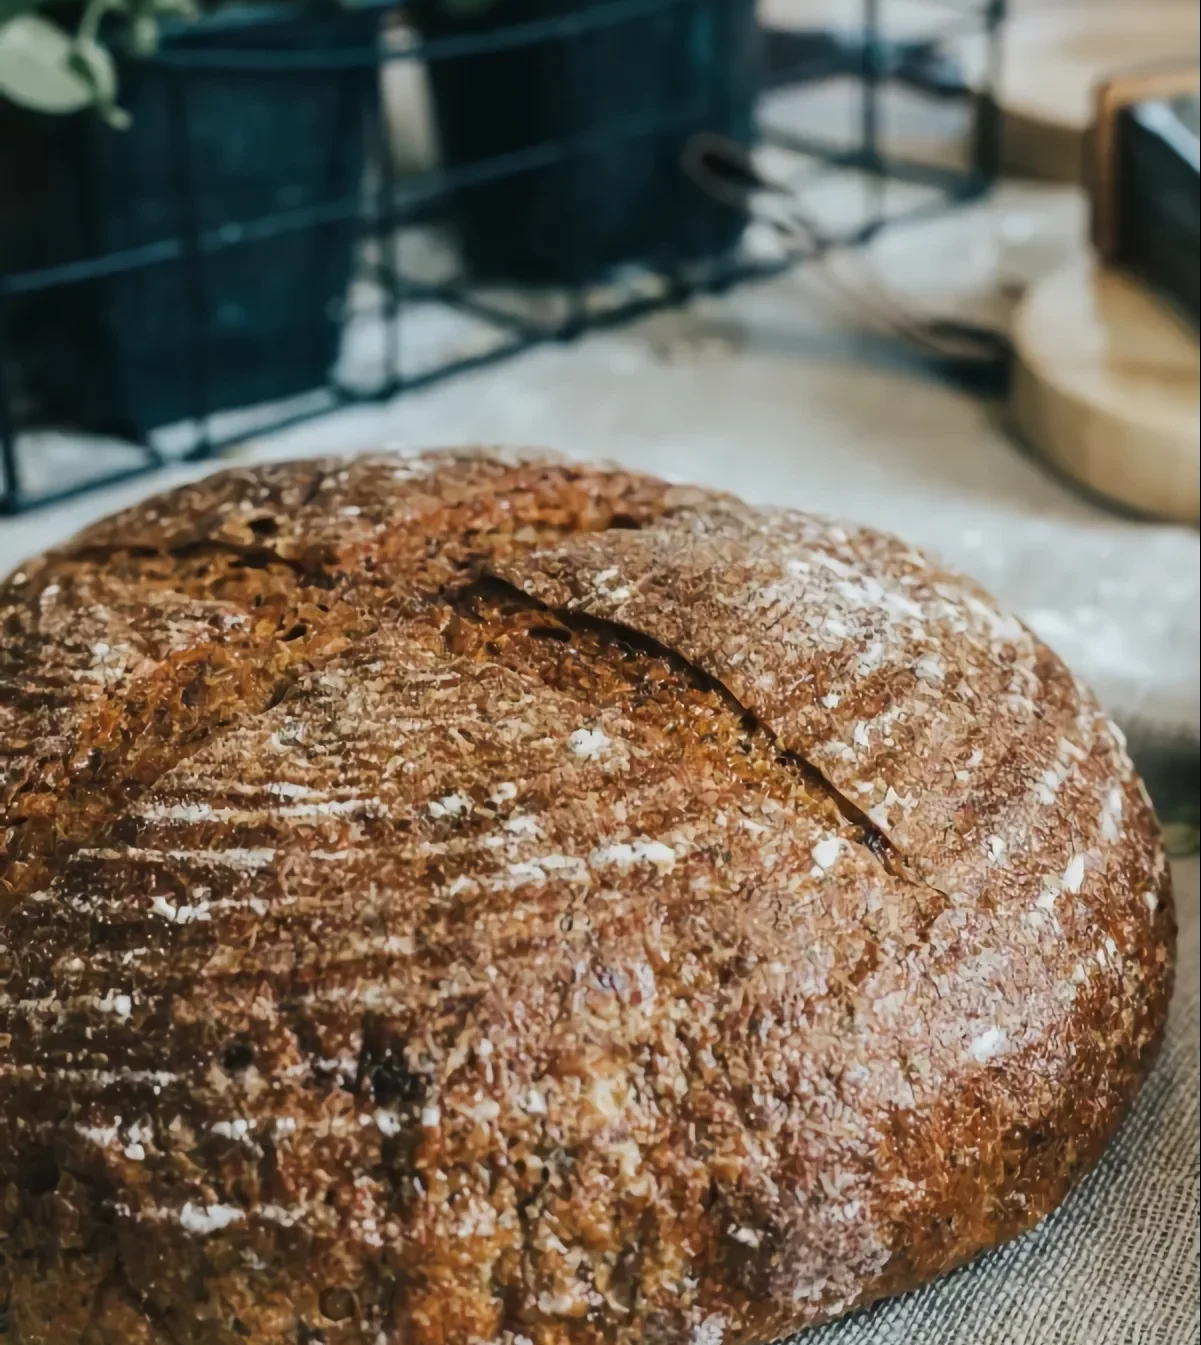 durée conservation pain frais idée faire tenir le pain longtemps sans le rassir